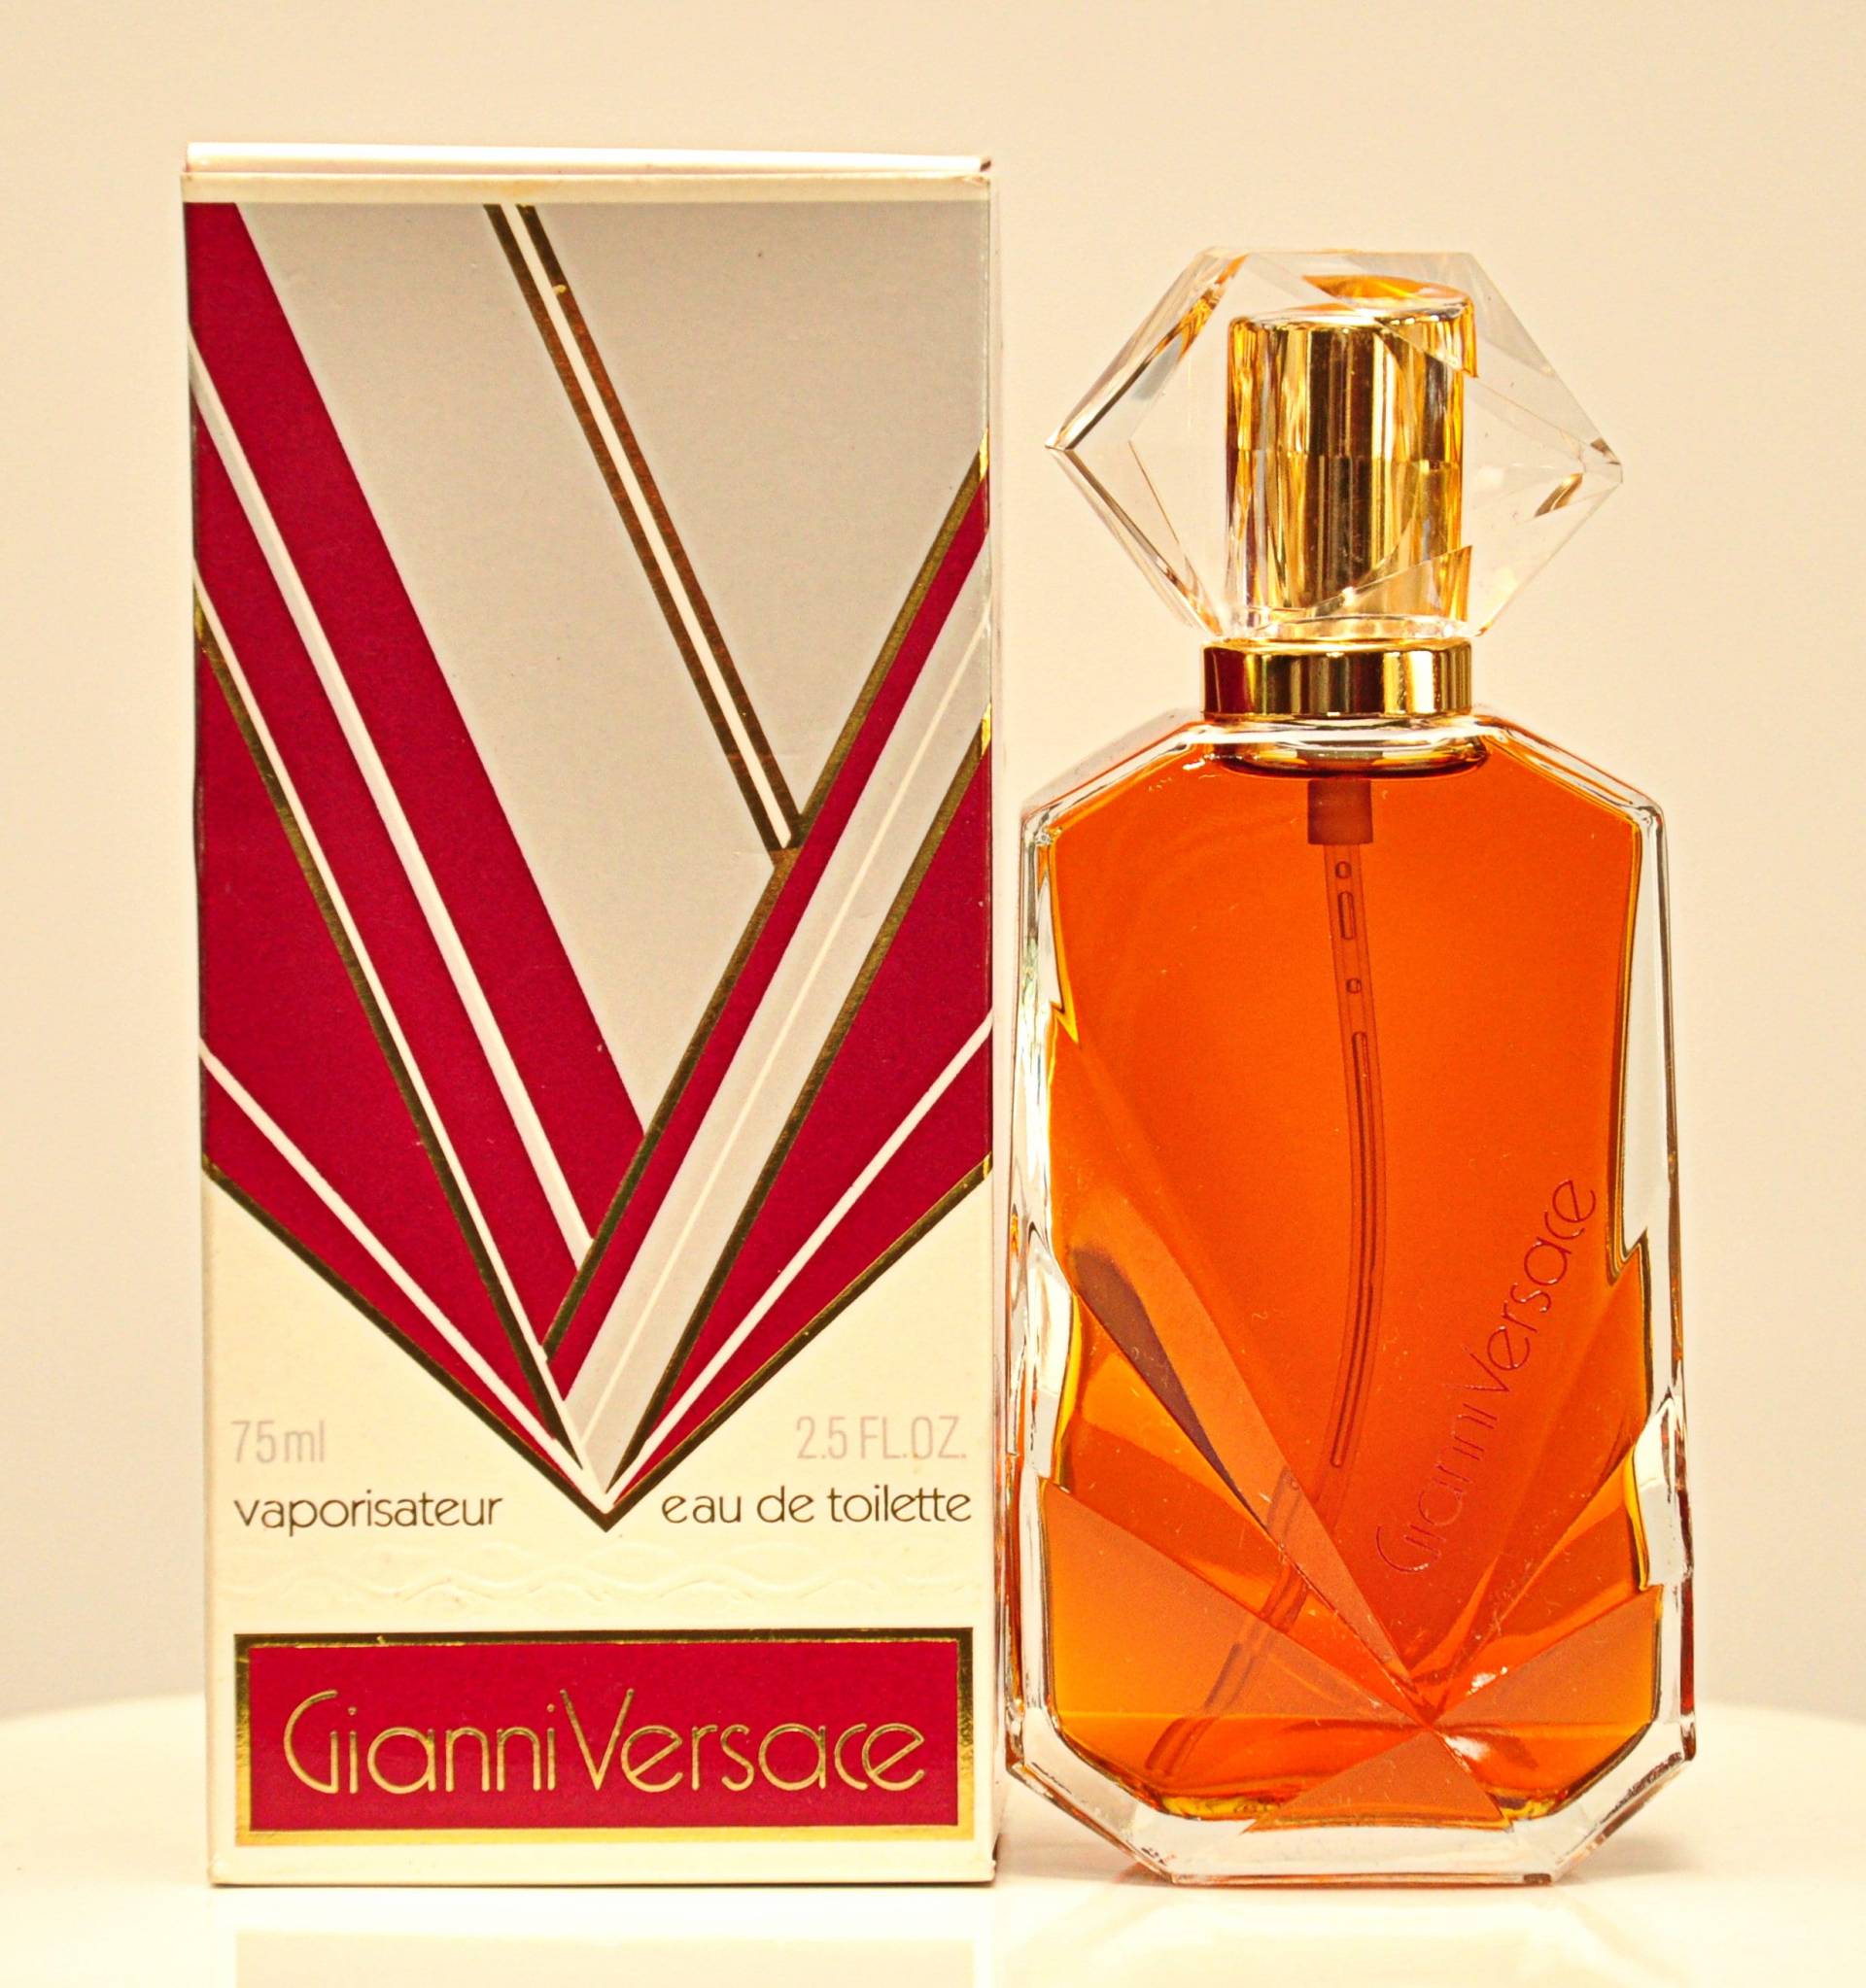 Gianni Versace Von Eau De Toilette Edt 75Ml Spray Parfüm Frau Rarissimo Vintage 1981 von Etsy - YourVintagePerfume